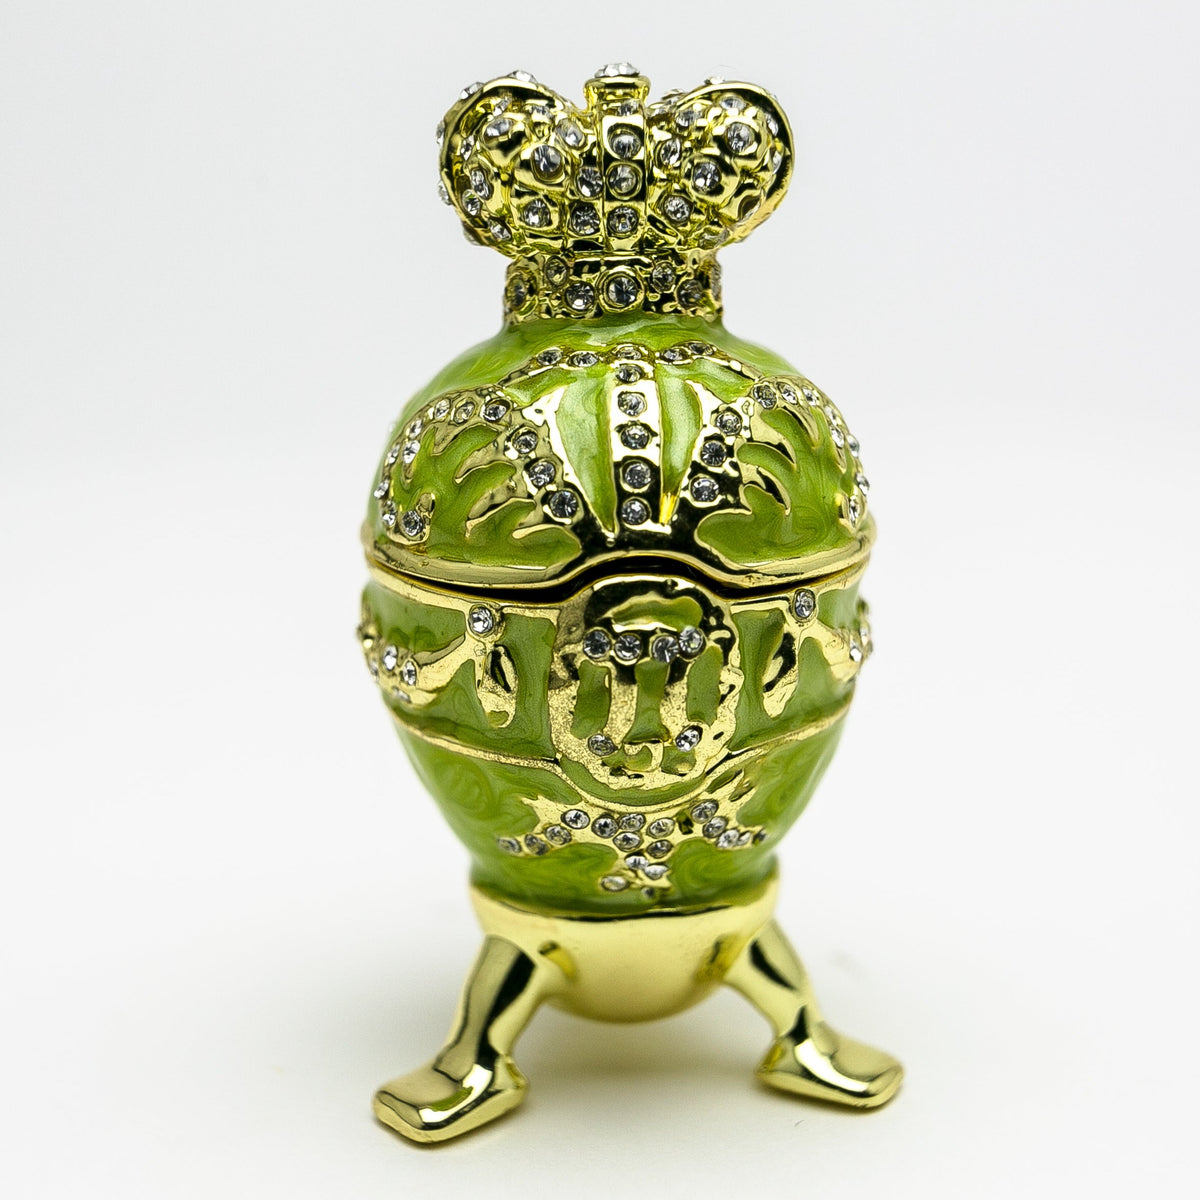 Œuf de Fabergé vert avec un cœur sur le dessus